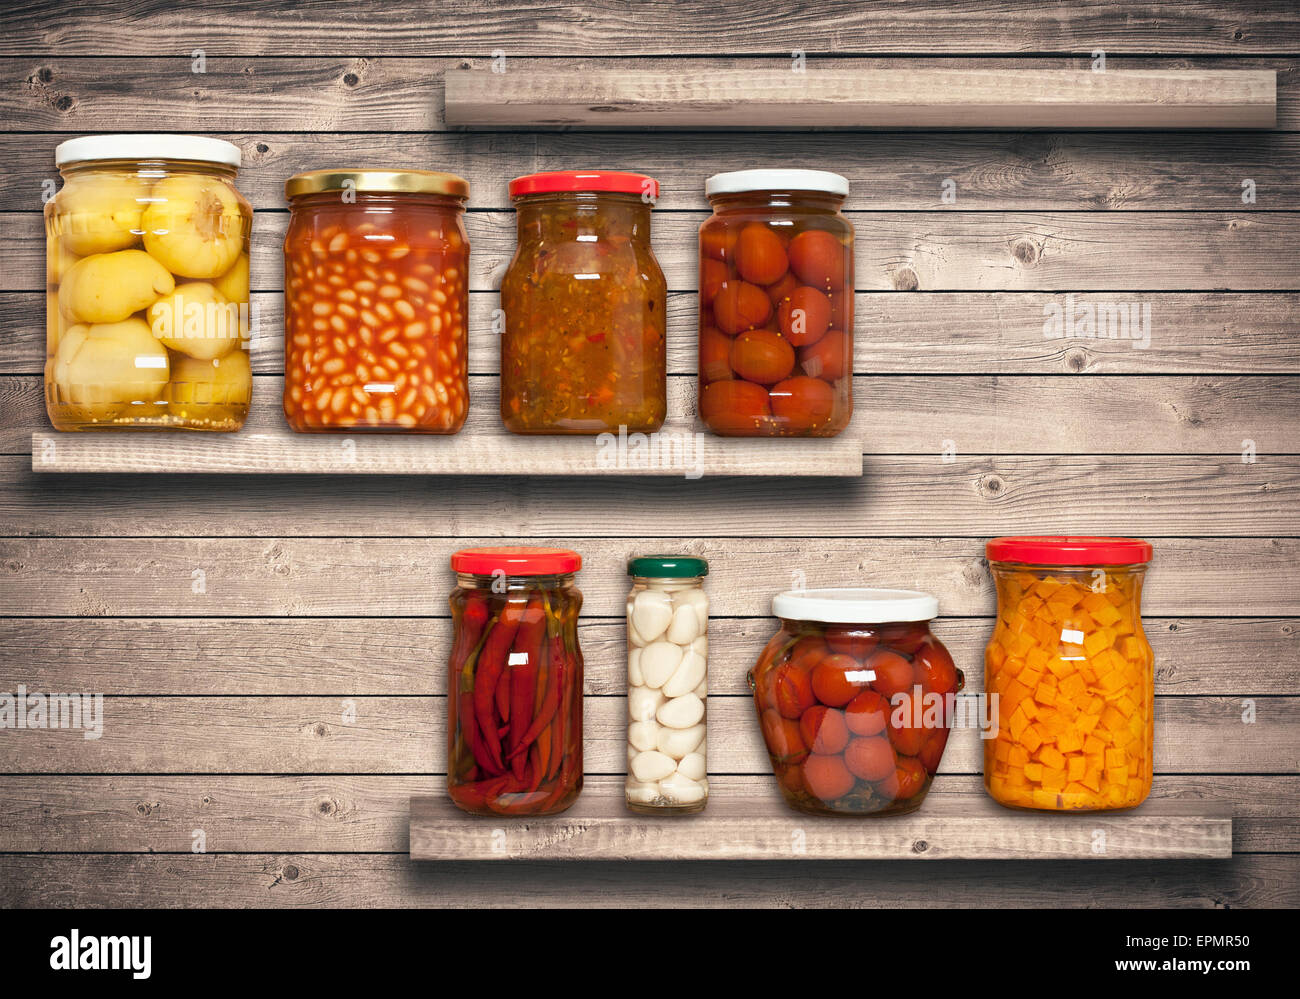 Conserves de carottes, tomates, Ail, piment, les haricots sur une étagère près d'un mur en bois brun Banque D'Images